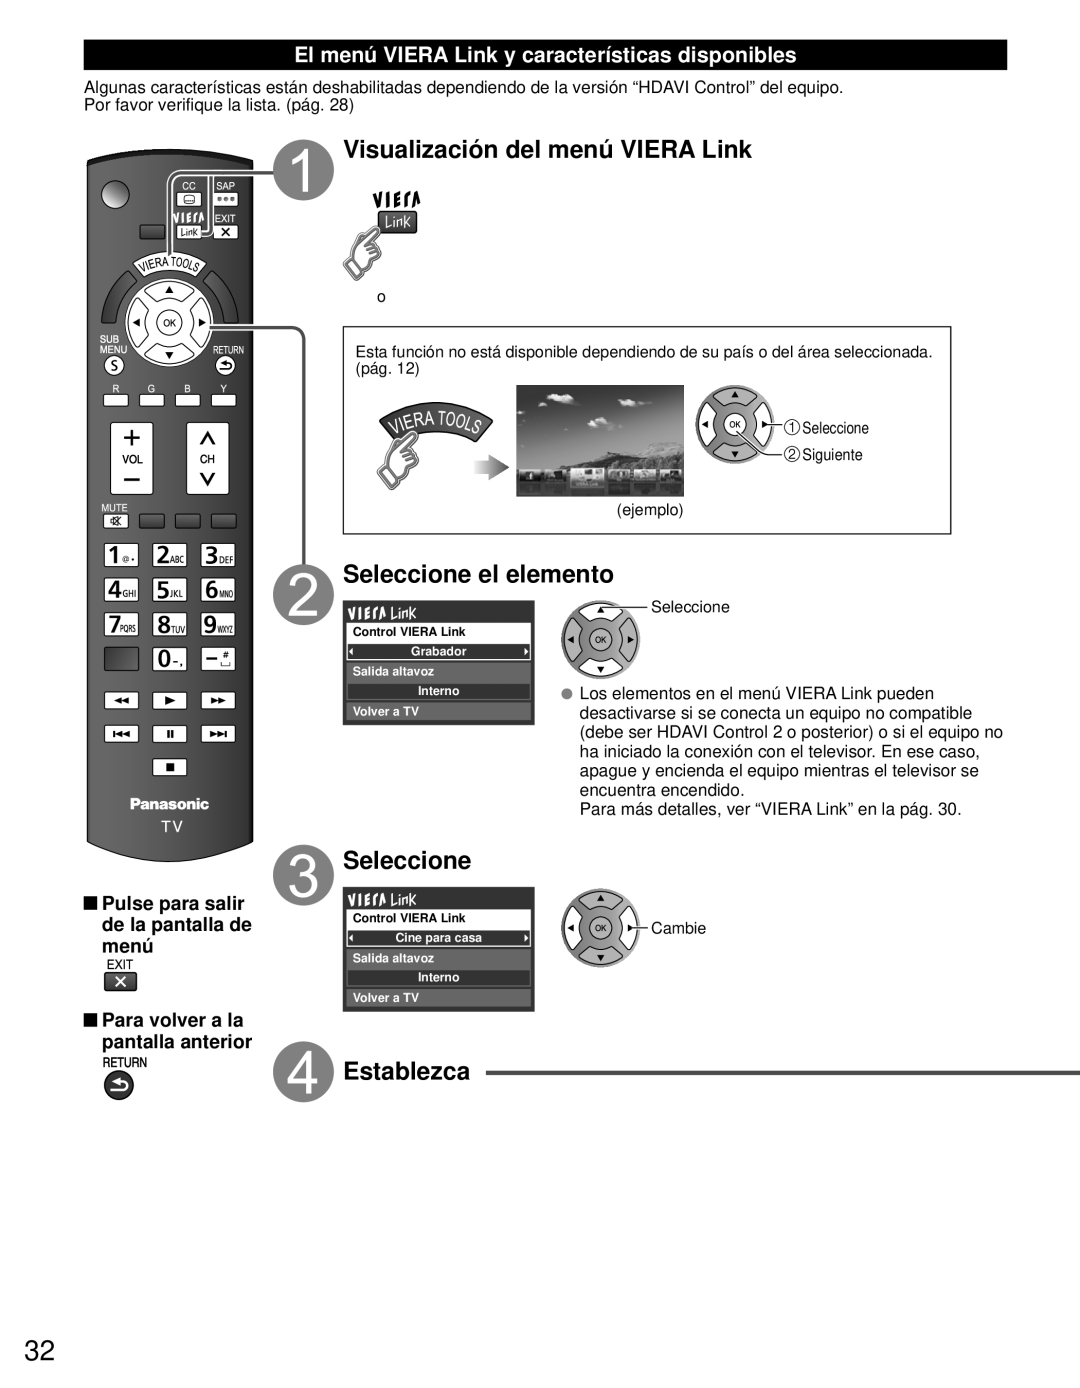 Panasonic TC-L42E3 owner manual Visualización del menú VIERA Link, Seleccione el elemento, Establezca 